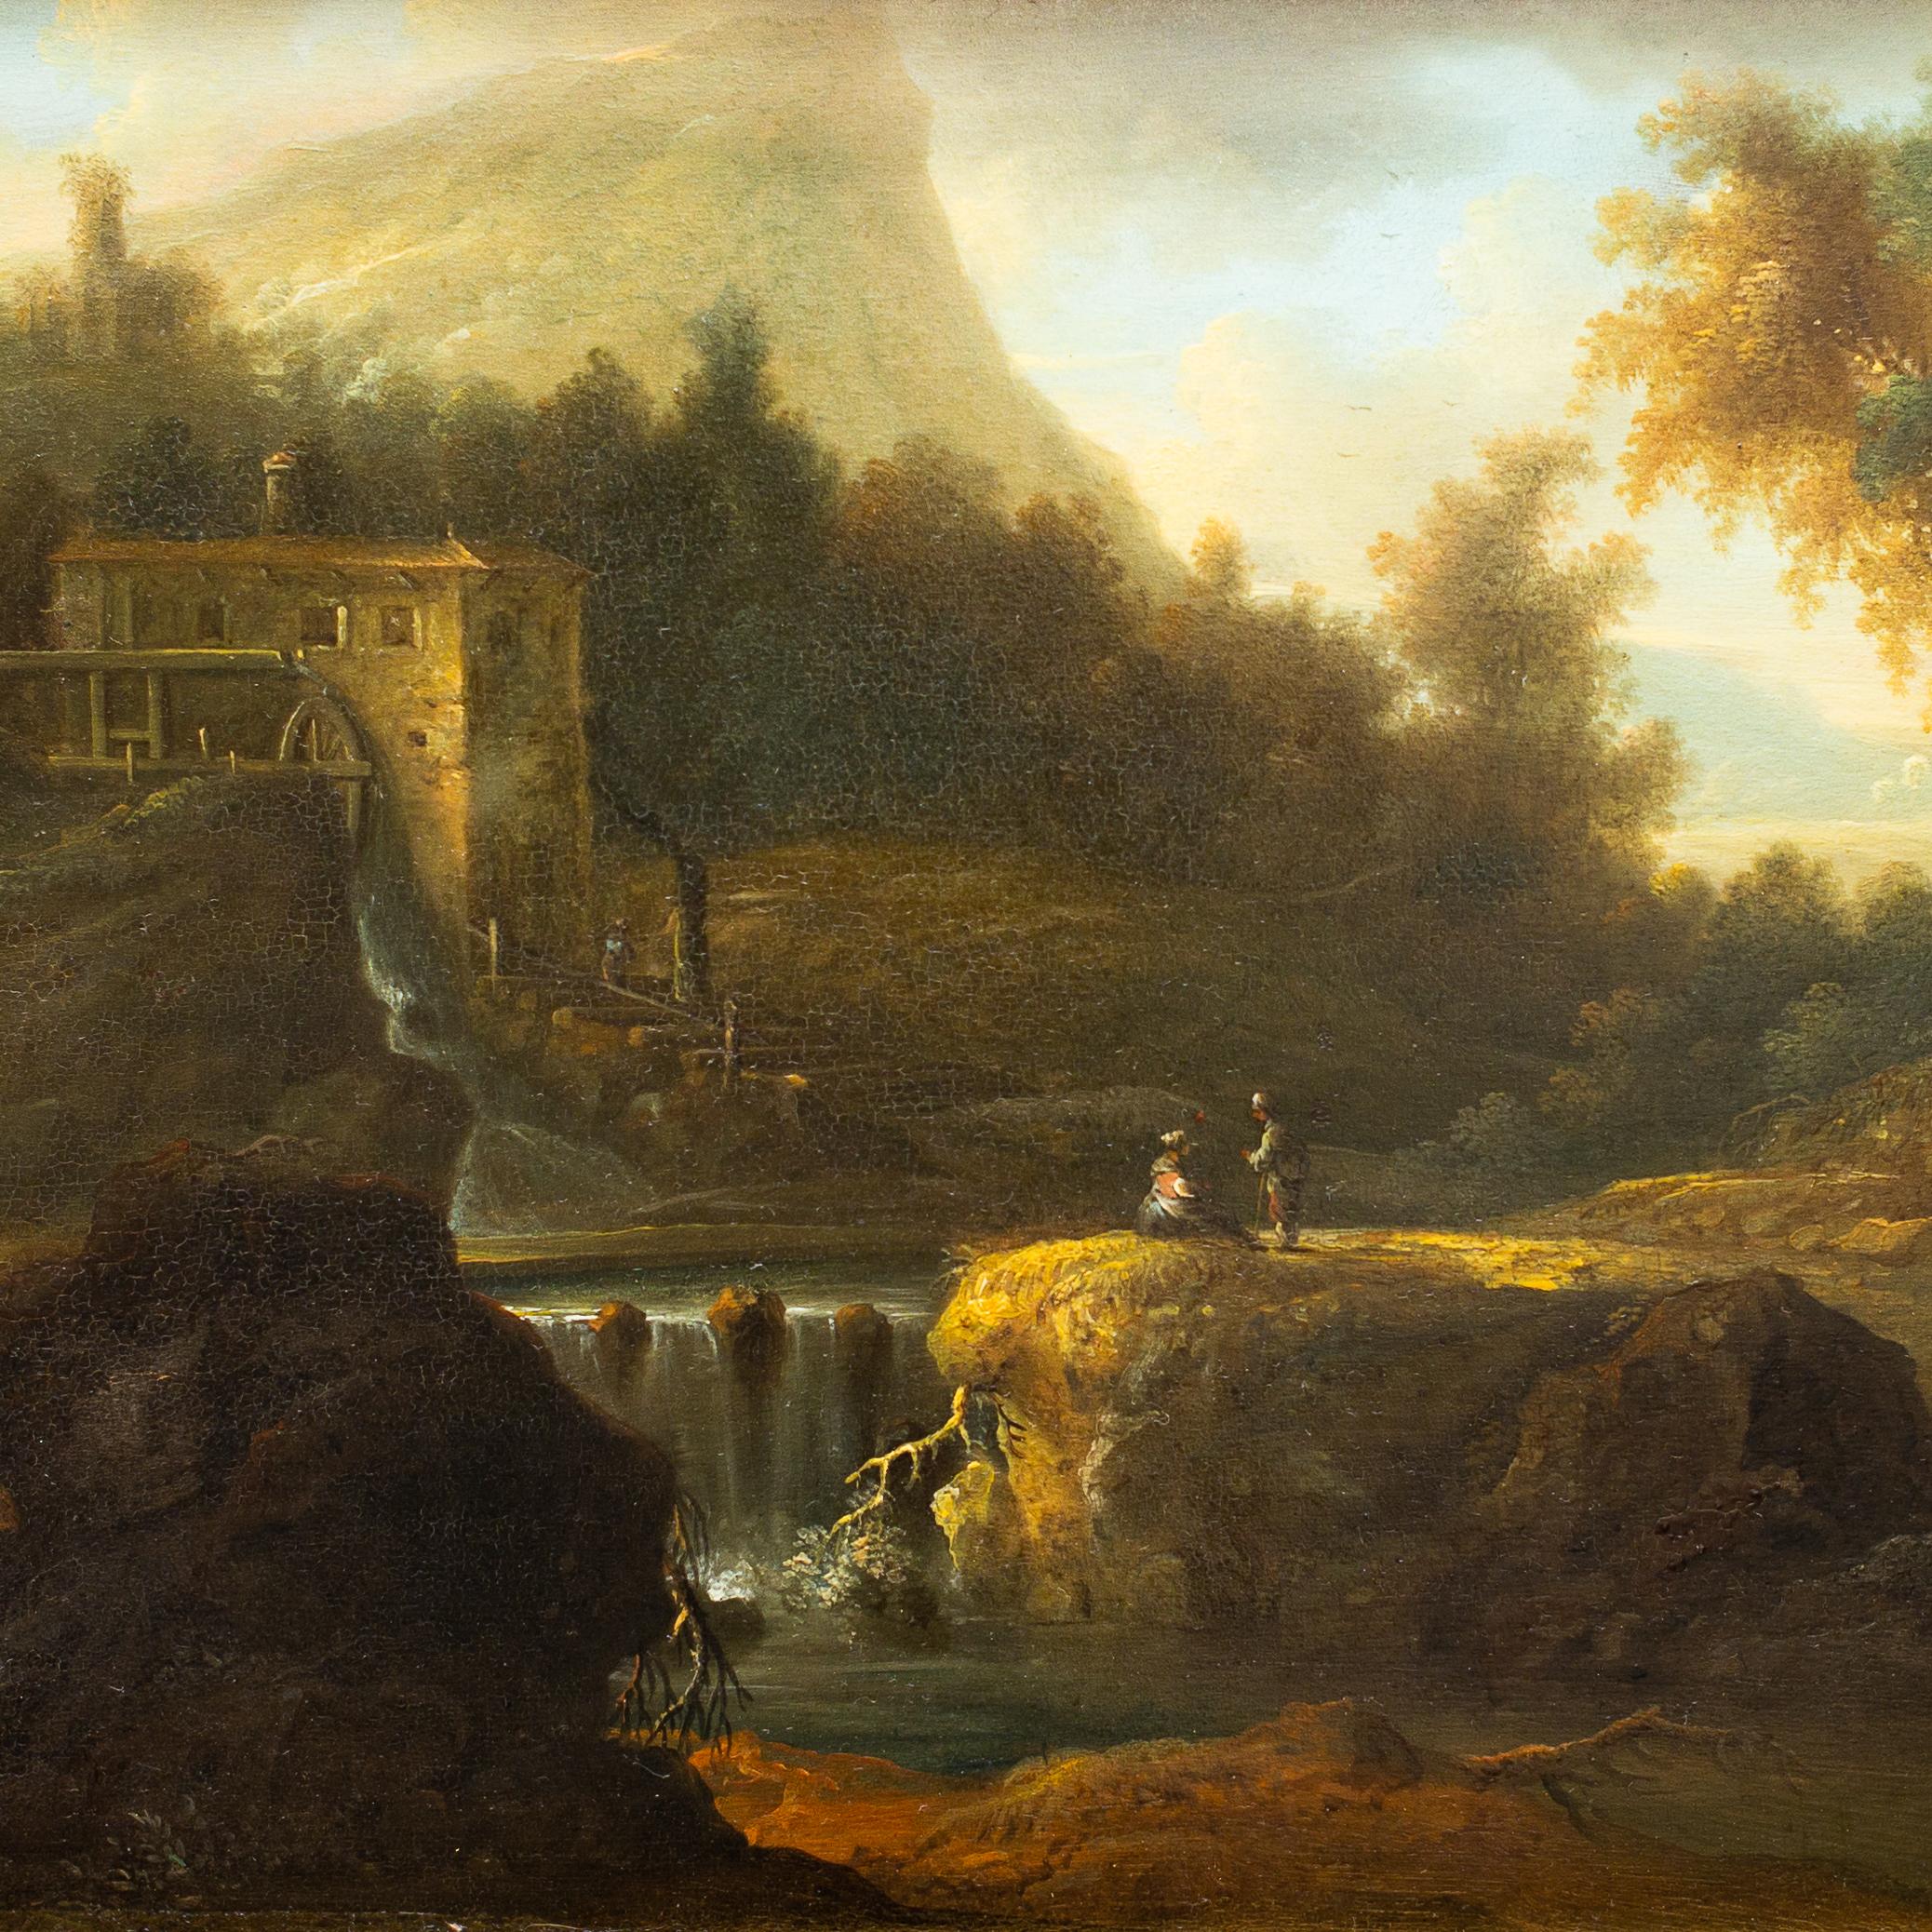 In diesem Gemälde aus dem 18. Jahrhundert, das eine italienische Landschaft darstellt, gibt es so viele Details, dass man sich in sie verlieben kann, zum Beispiel die zart gemalten Figuren, die sich unterhalten, der Wasserfall in der Mitte der